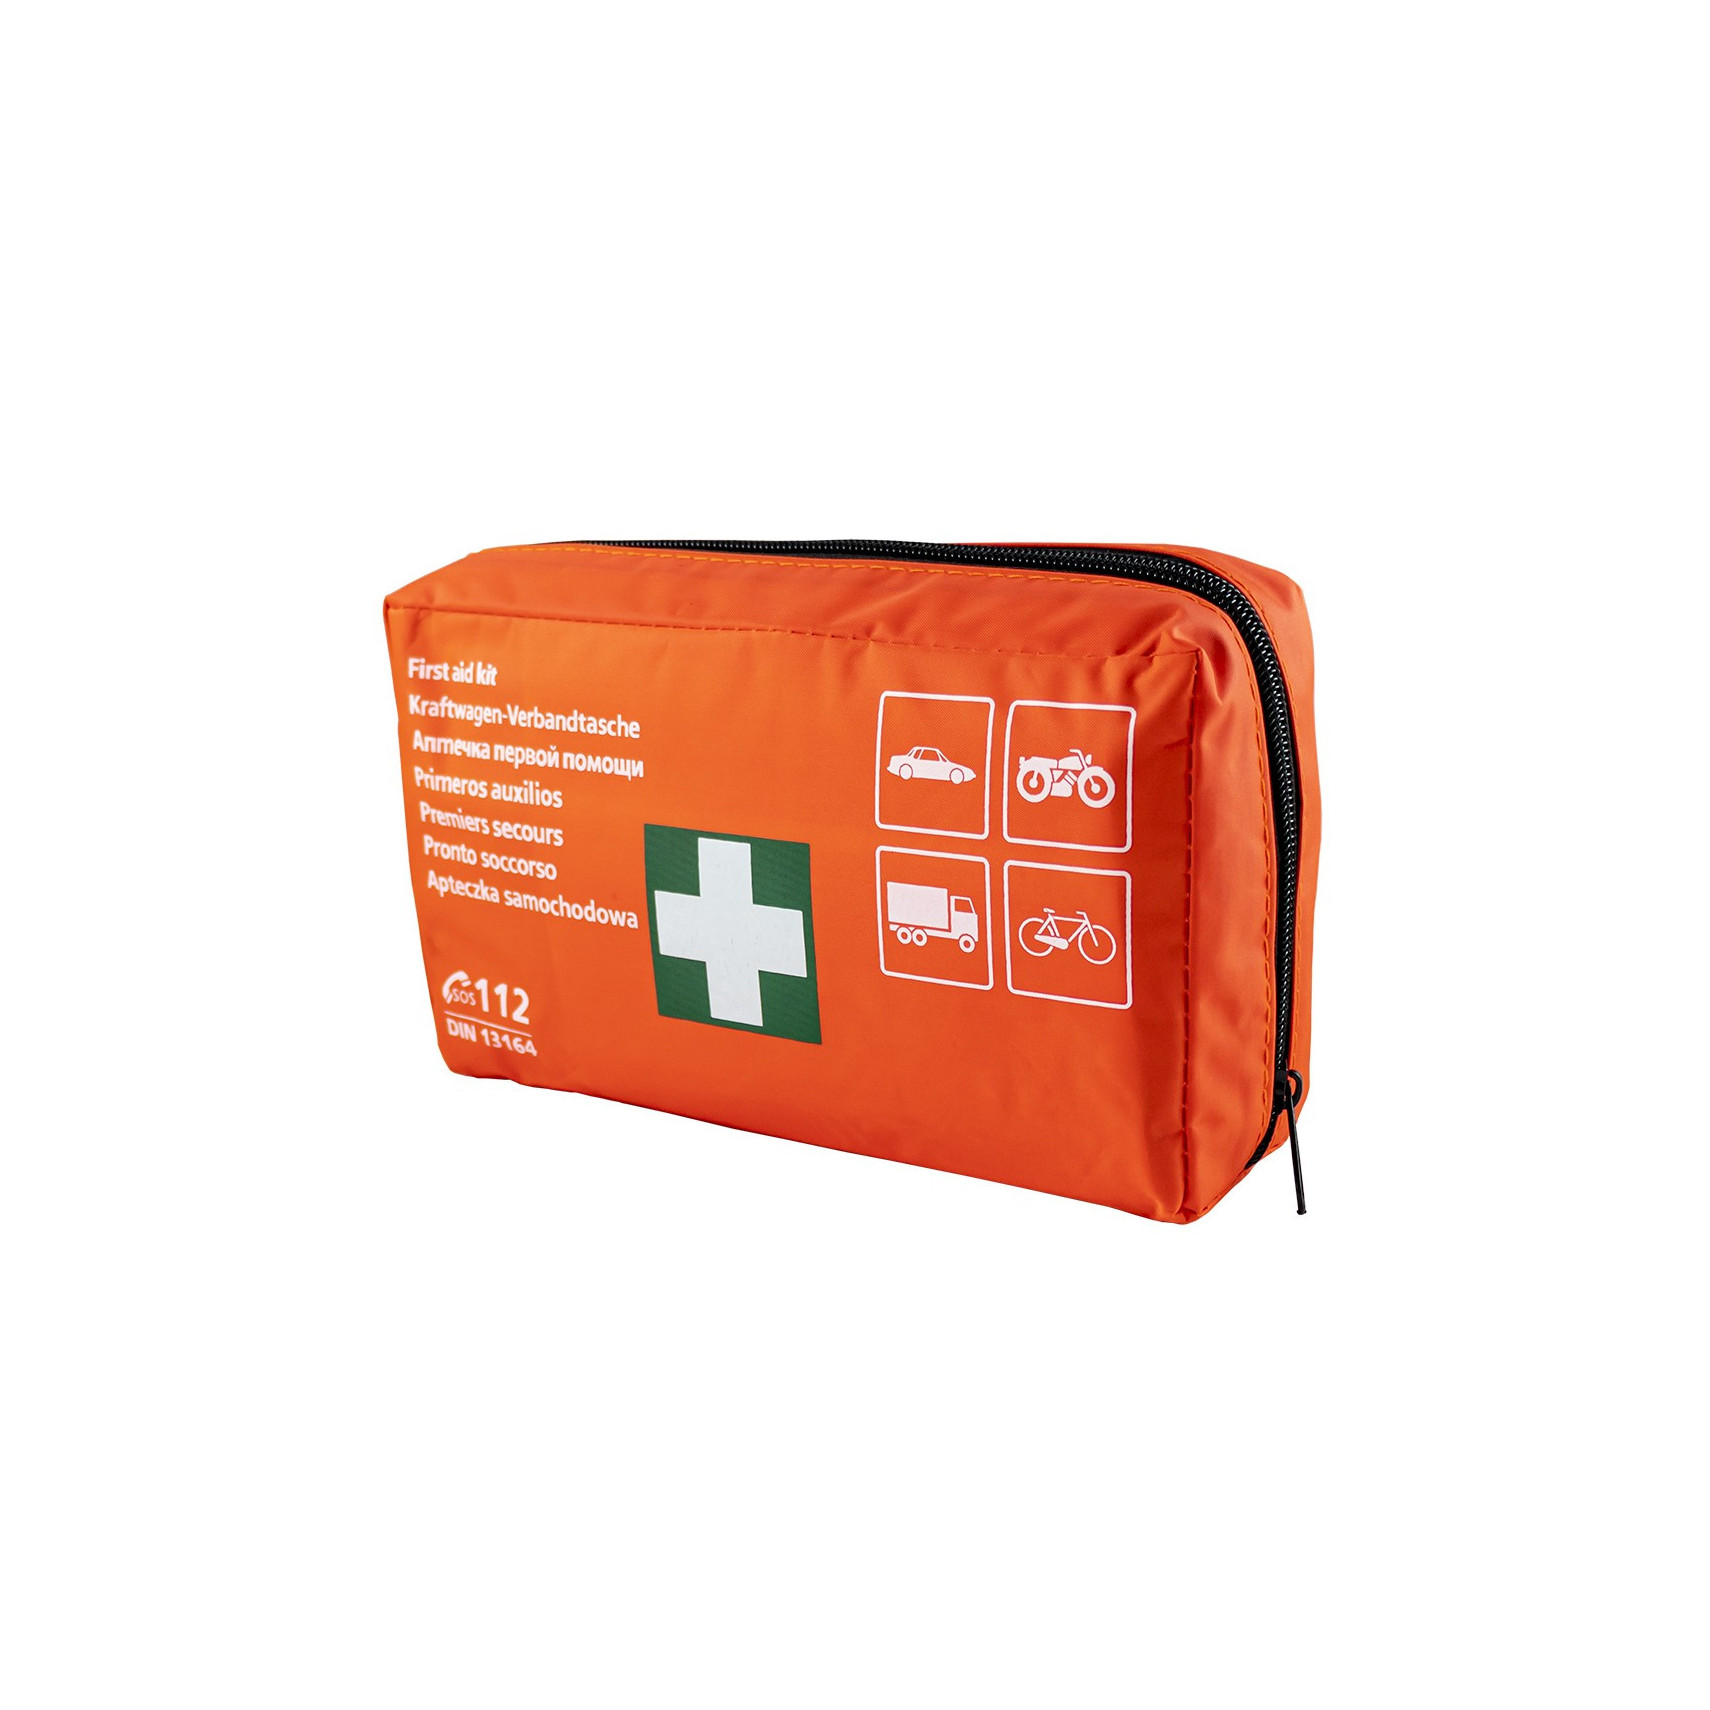 Trousse de premiers secours portable - Just4Camper RG-102361